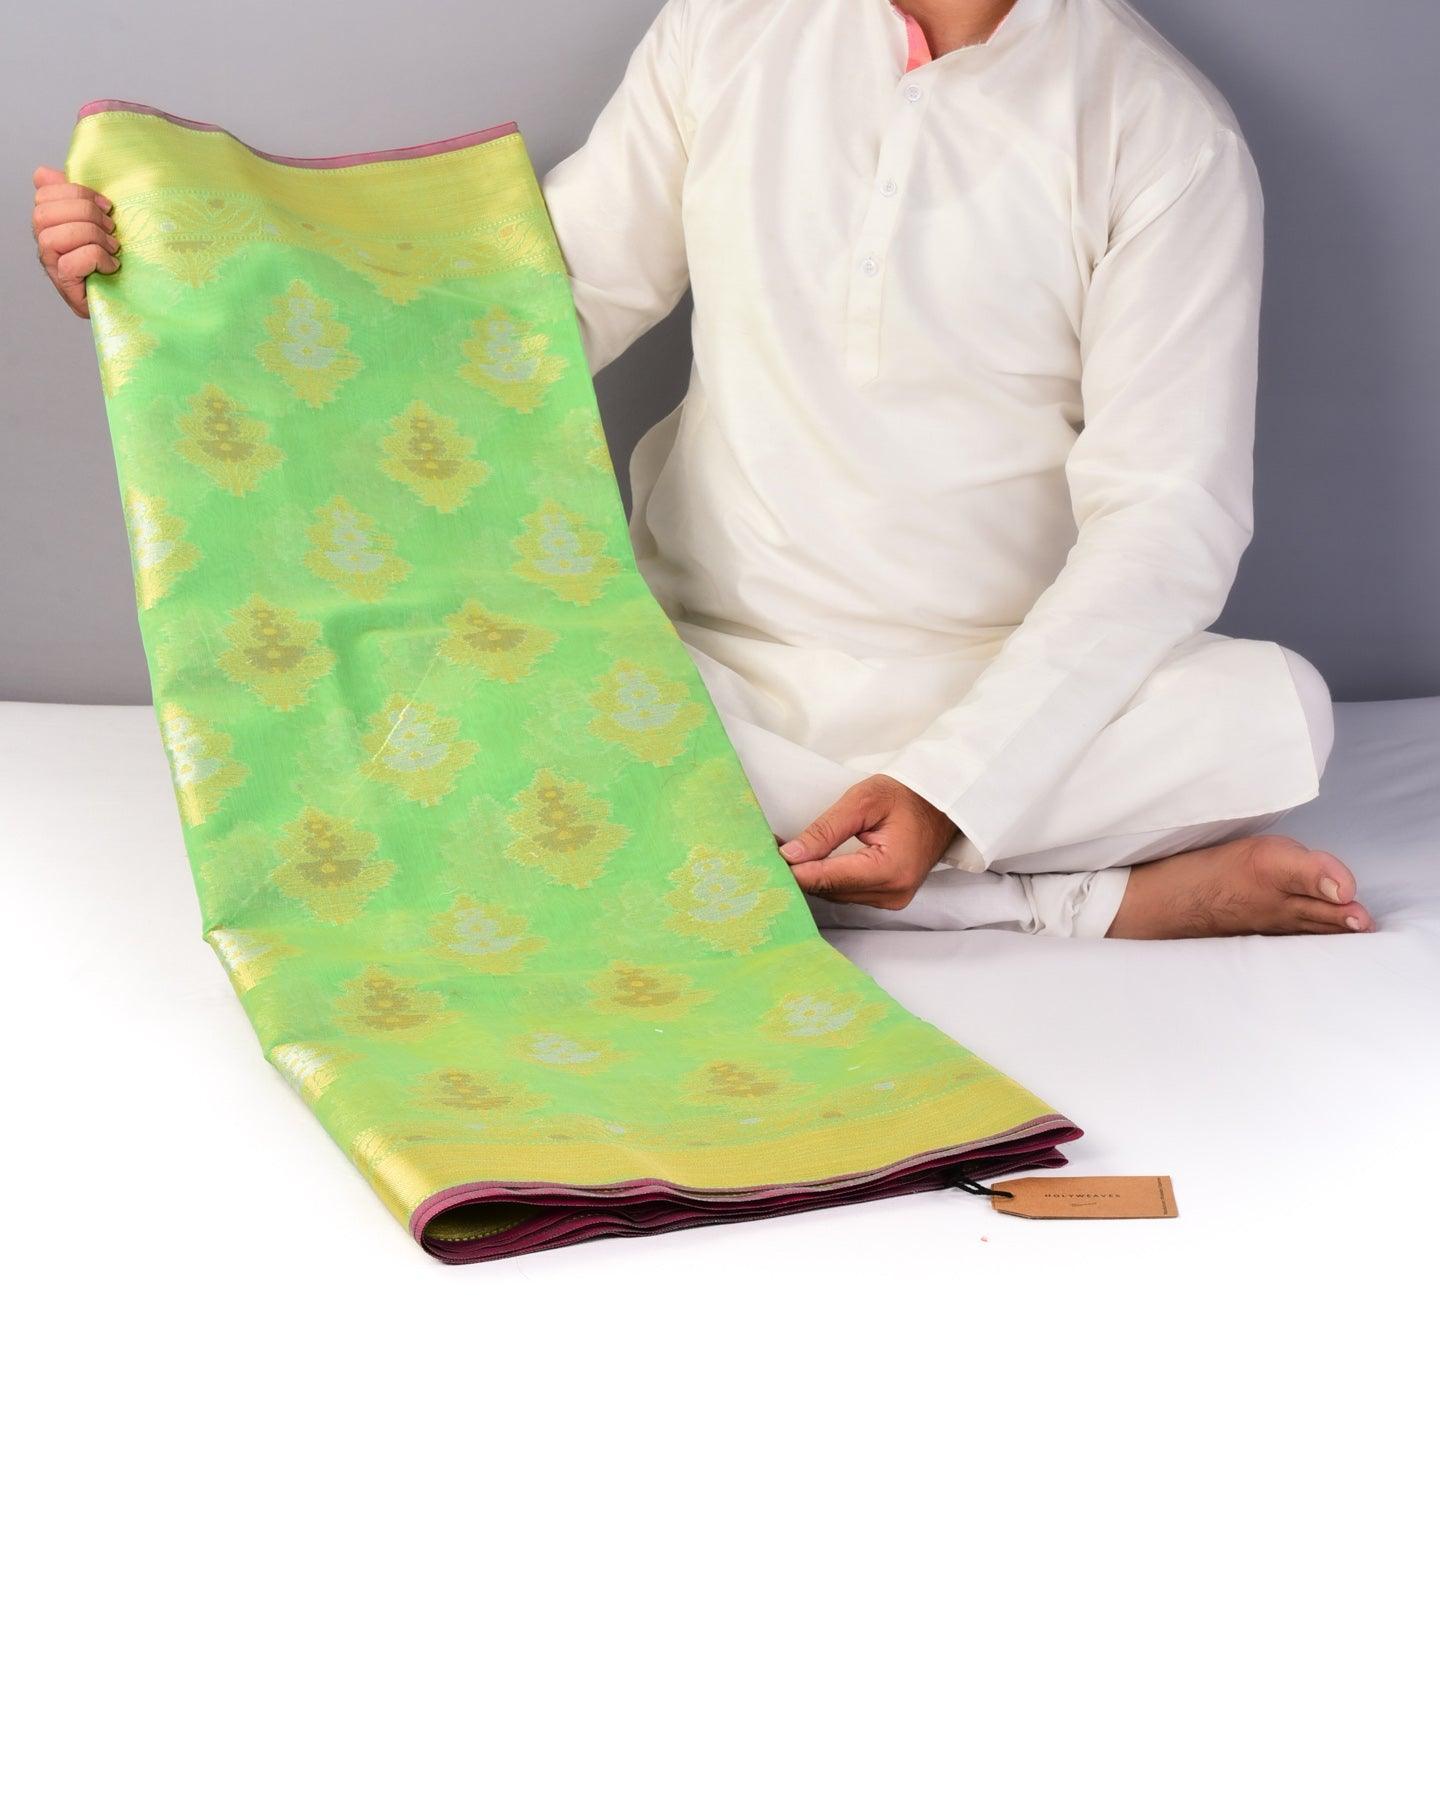 Green Banarasi 3-Color Zari Cutwork Brocade Woven Cotton Silk Saree - By HolyWeaves, Benares